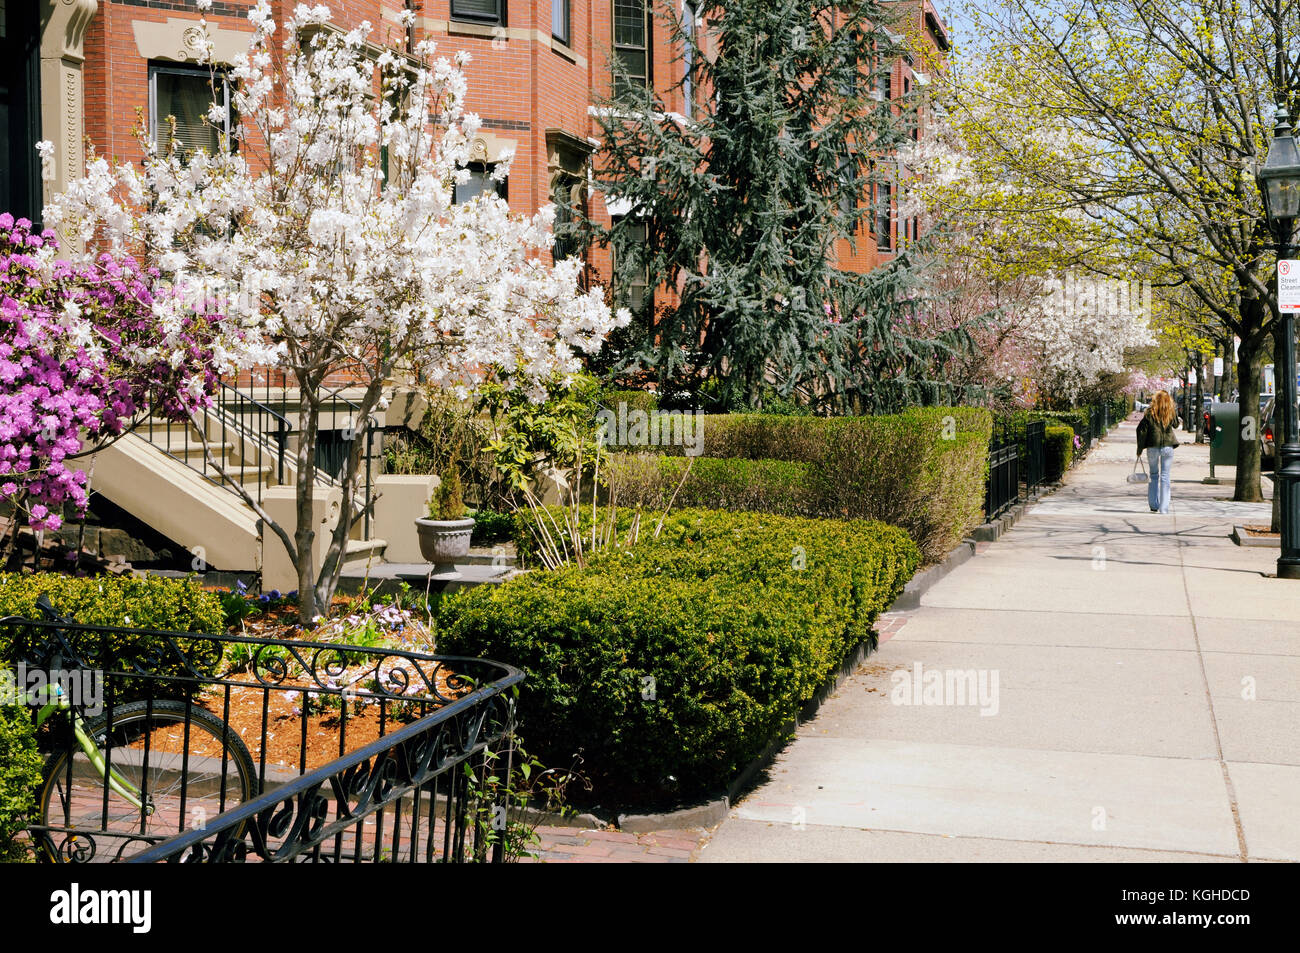 Frühling in Back Bay, Boston. eleganten Gärten, breite Bürgersteige, backsteingebäuden und Ziegelstein Wohnhäuser, viktorianische Architektur. Stockfoto